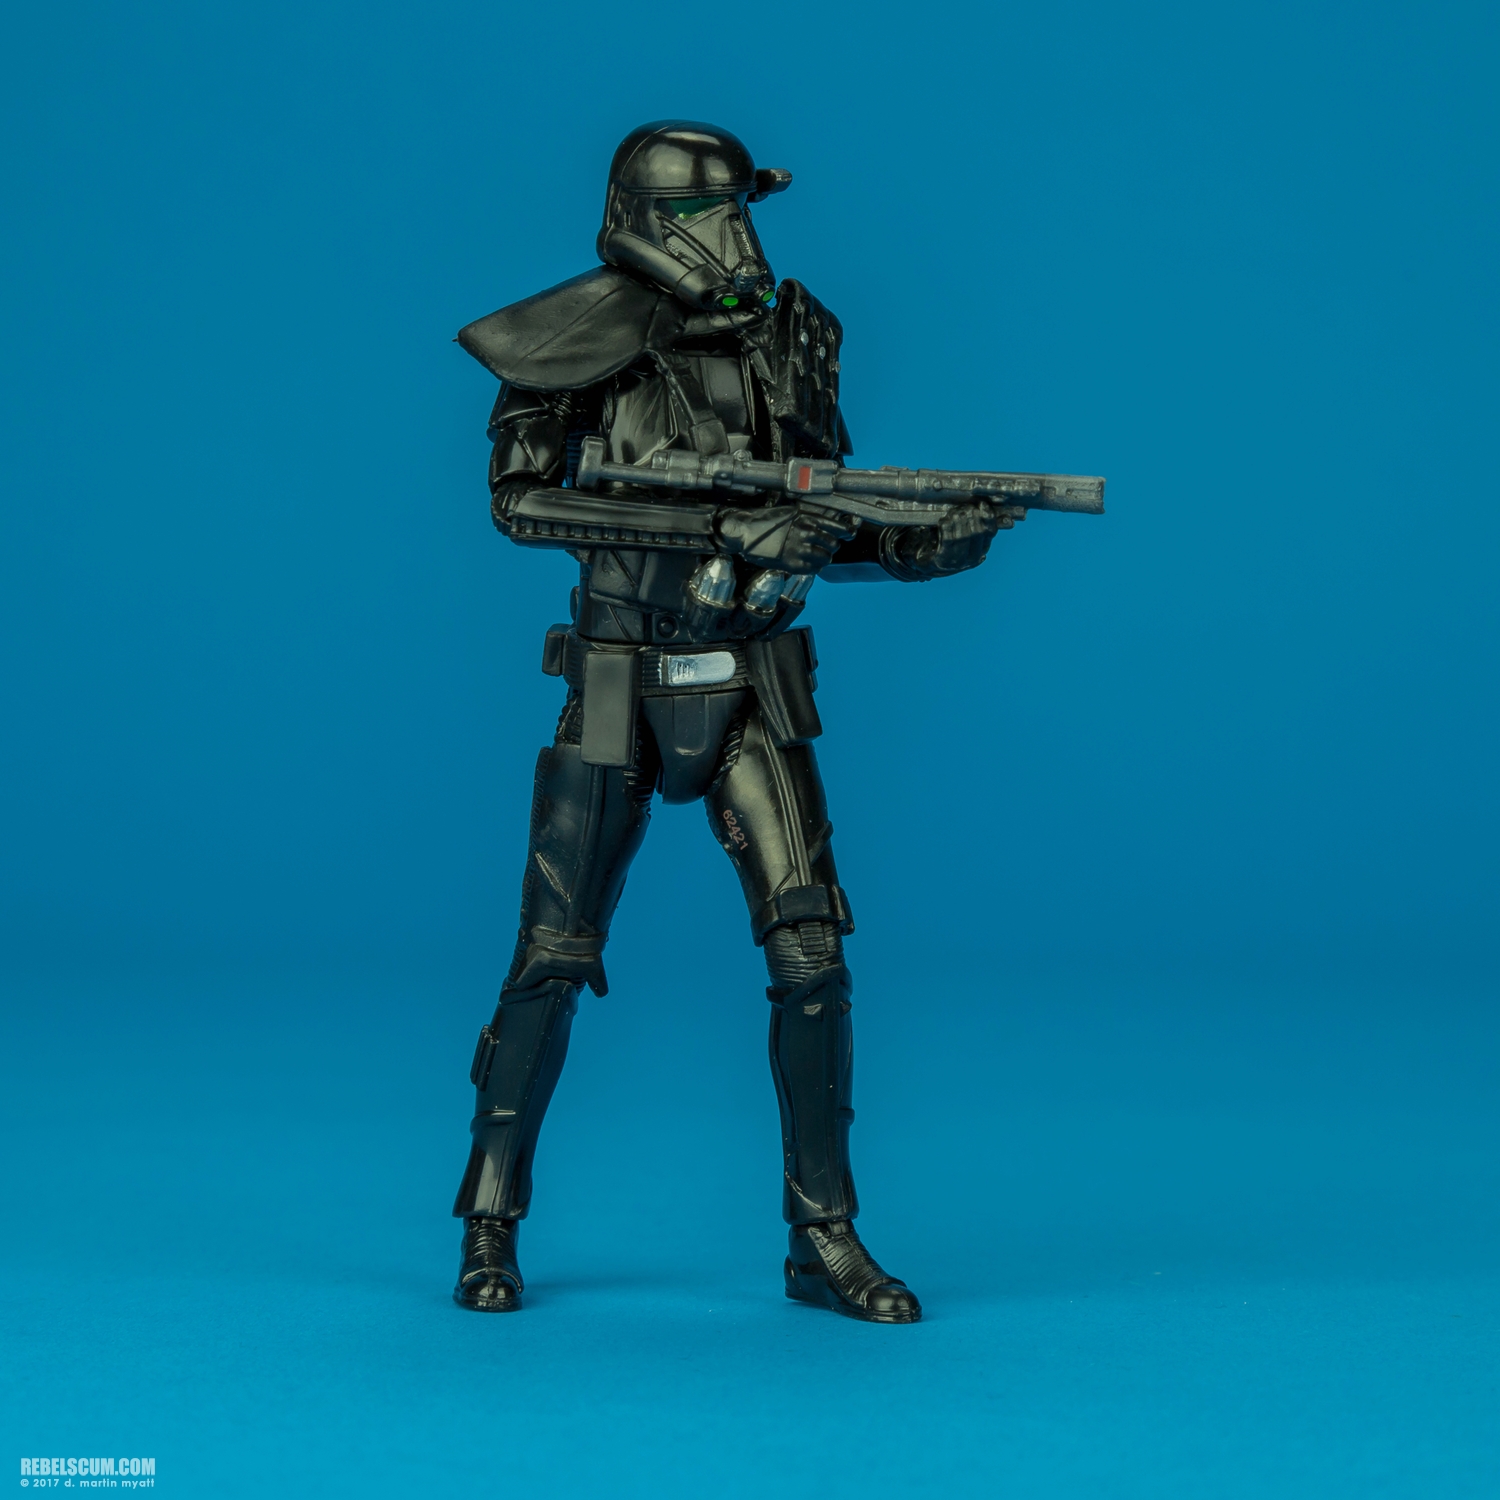 Imperial-Death-Trooper-The-Black-Series-C0663-B4054-011.jpg